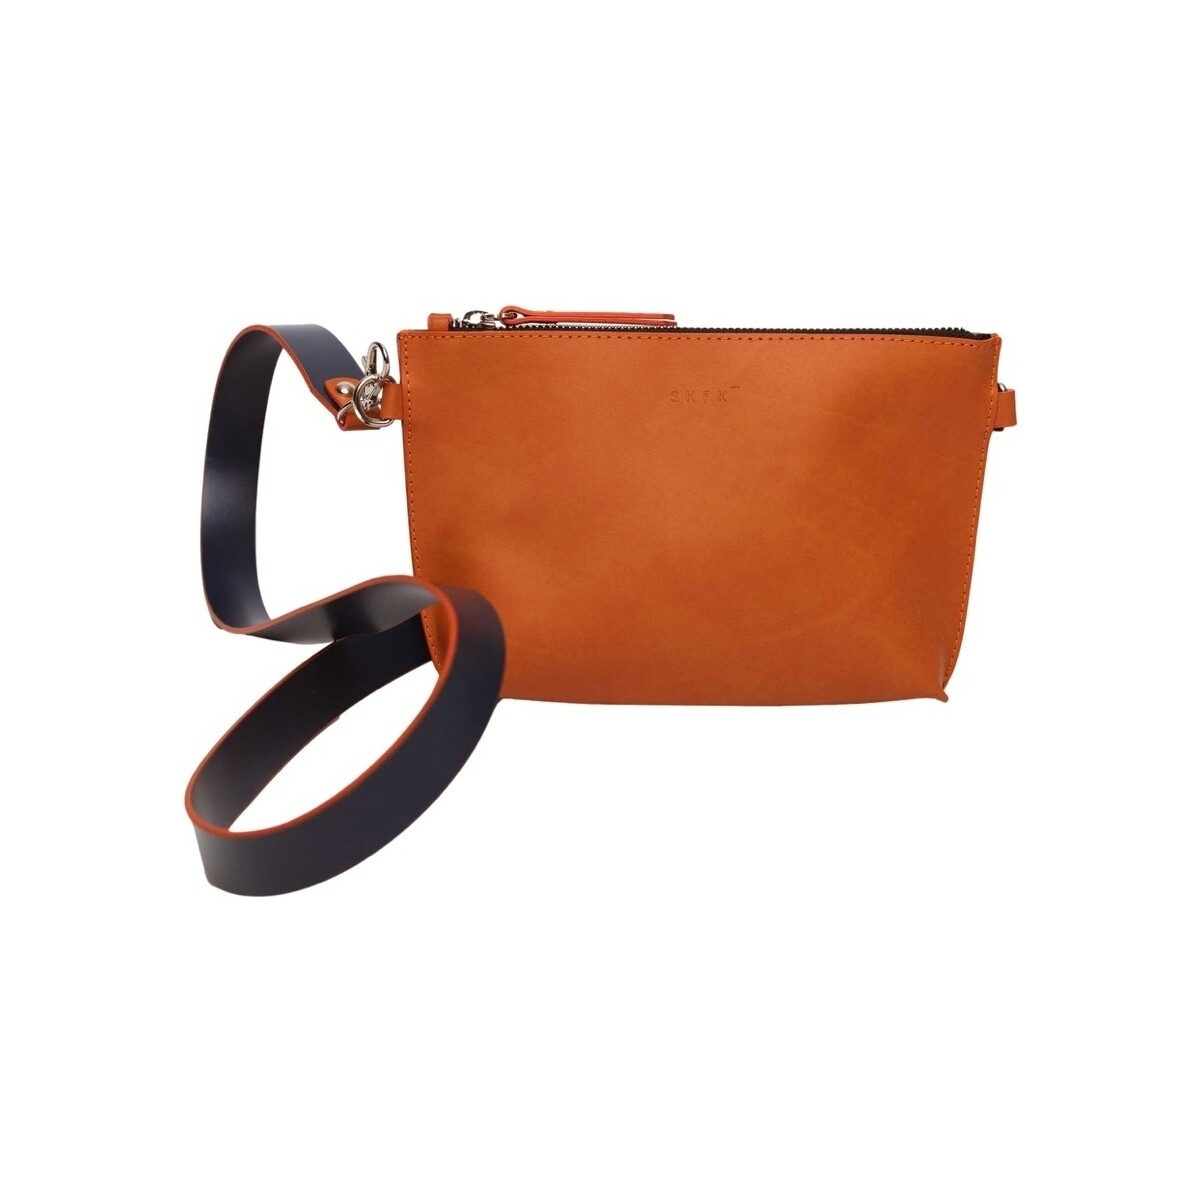 Τσάντες Γυναίκα Πορτοφόλια Skfk Emy Bag - Orange Orange